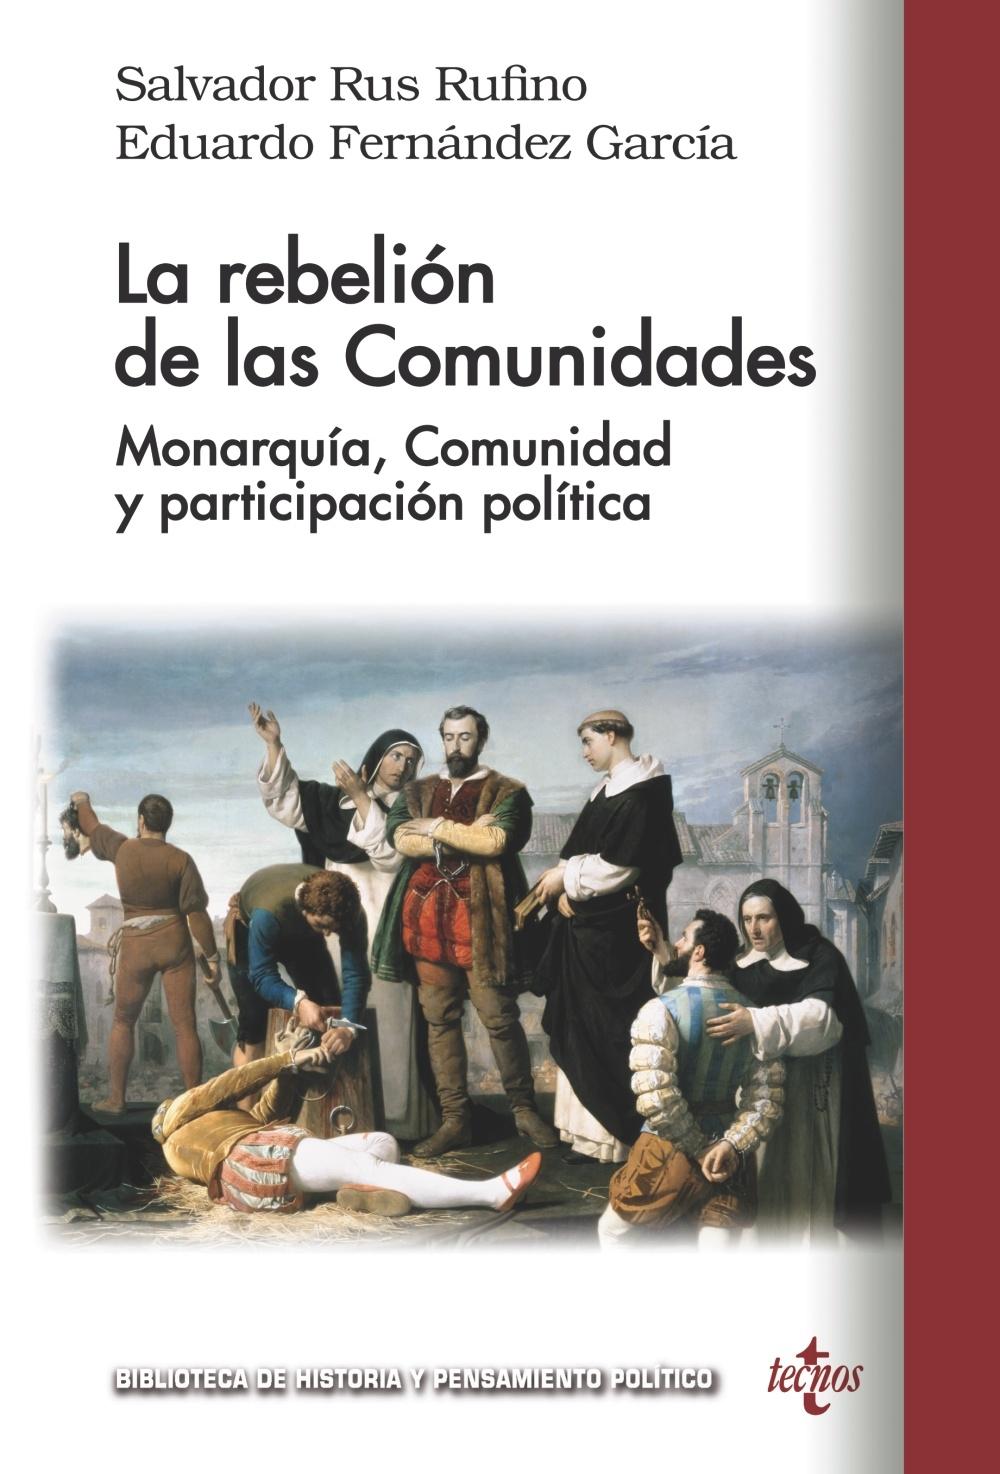 La rebelión de las Comunidades "Monarquía, Comunidad y participación política". 